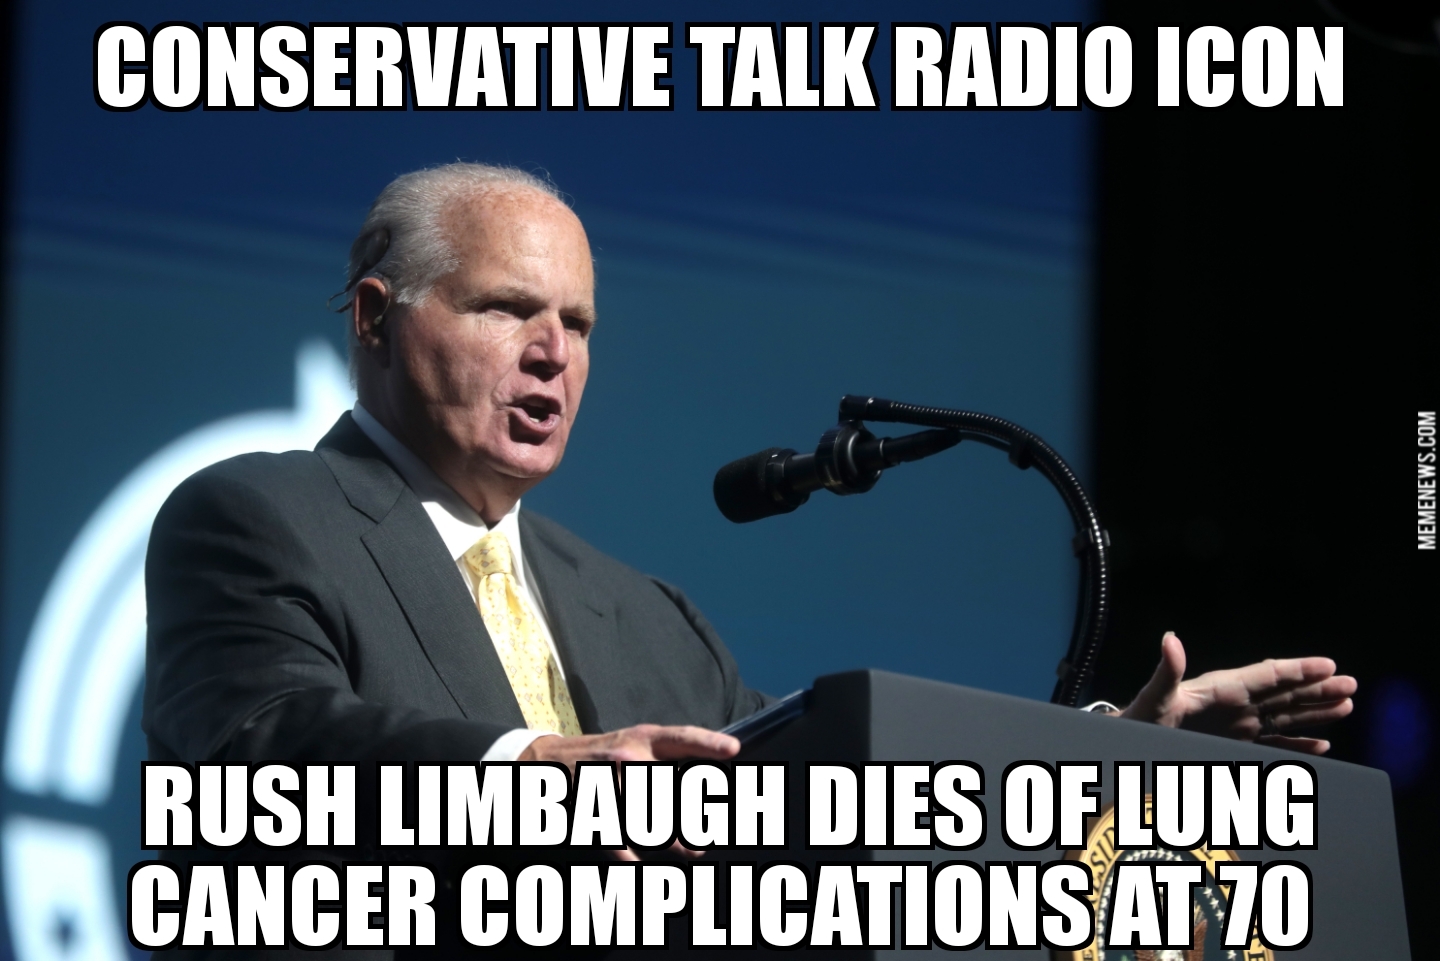 Rush Limbaugh dies